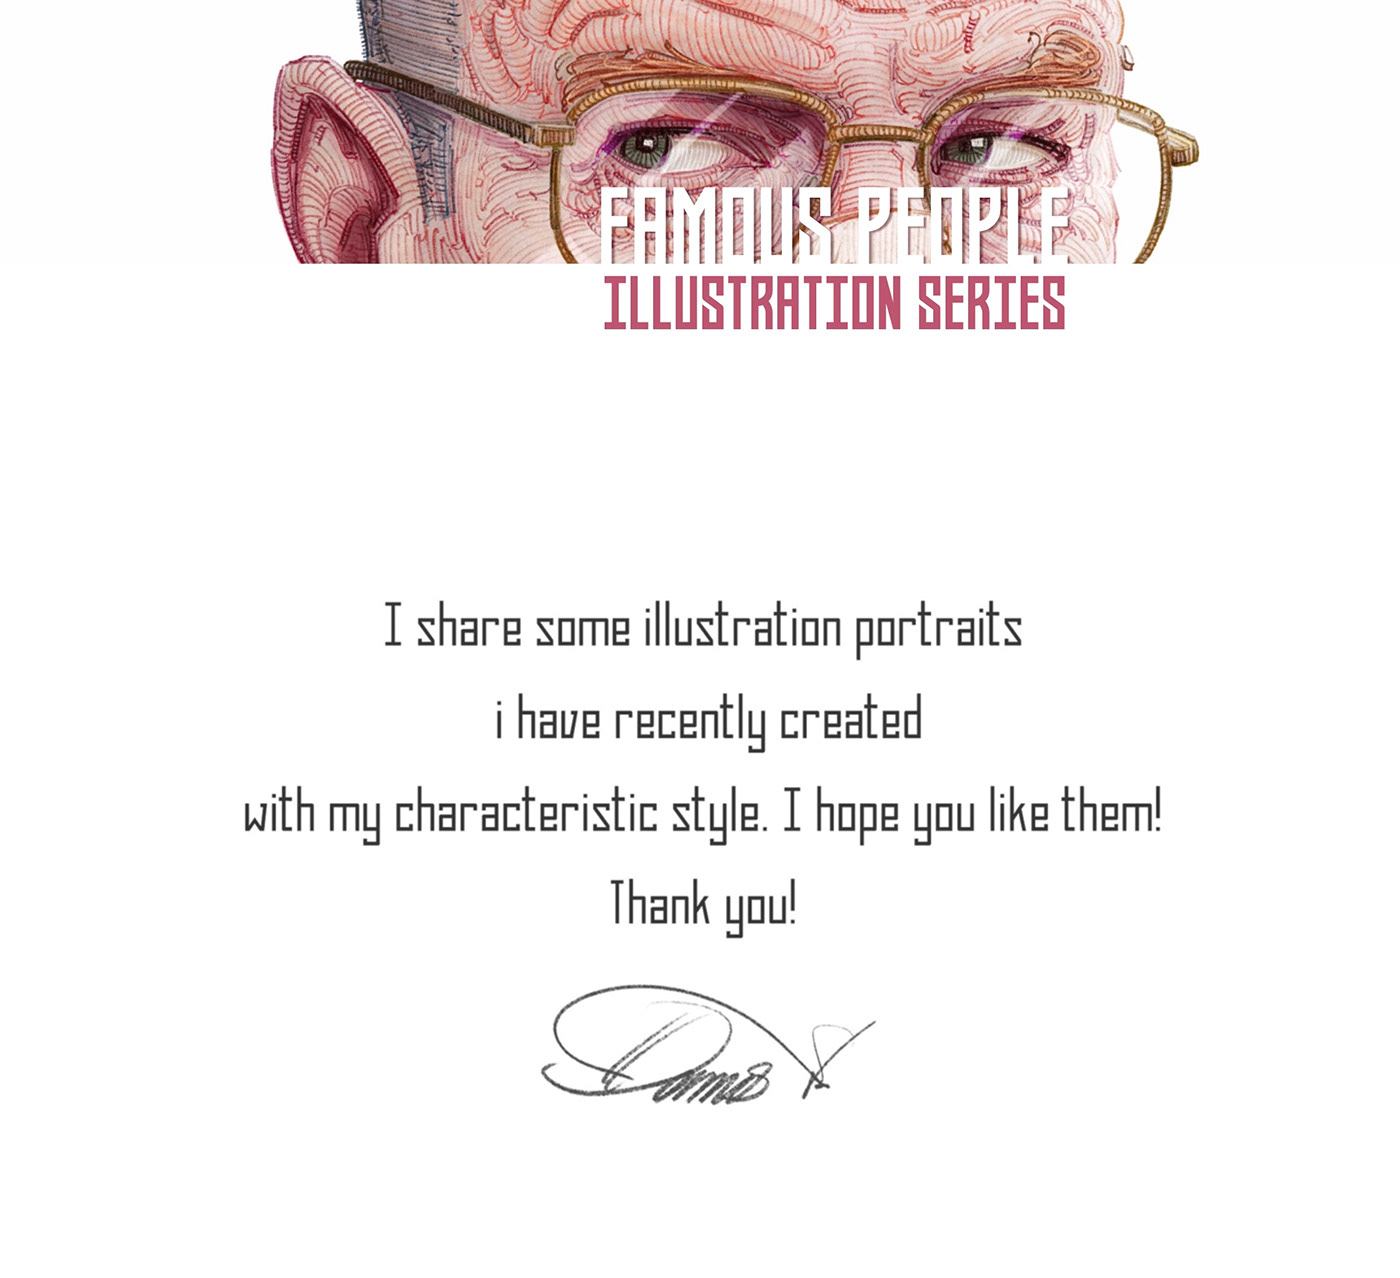 caricature   Celebrity Cinema Digital Art  editorial face ILLUSTRATION  portrait Portraiture sketch